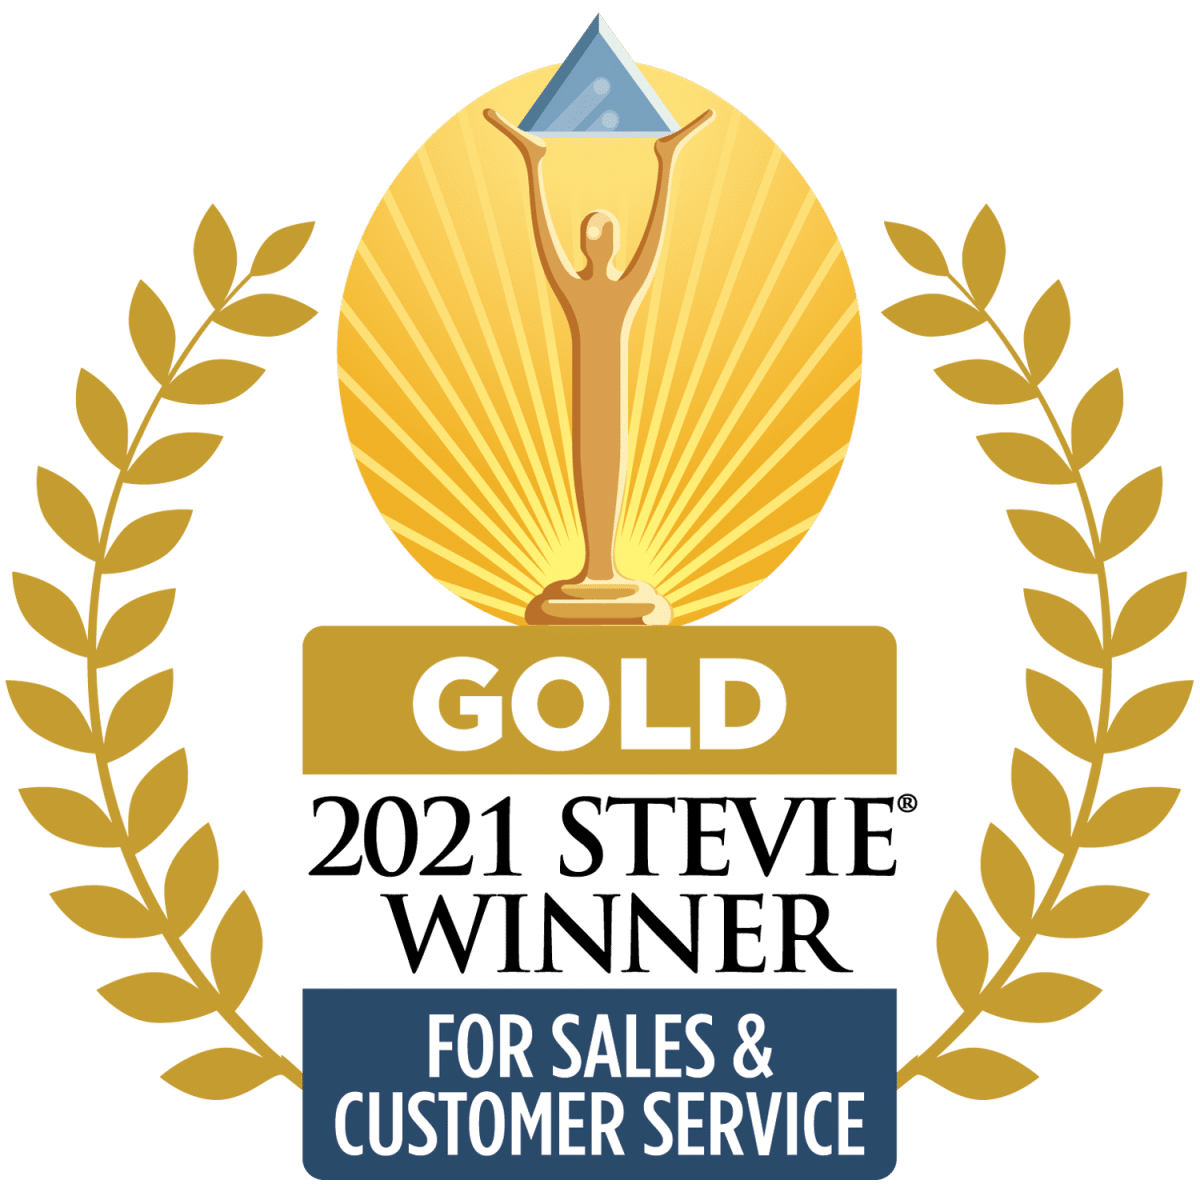 Gold 2021 Stevie Winner - For Sales & Customer Service